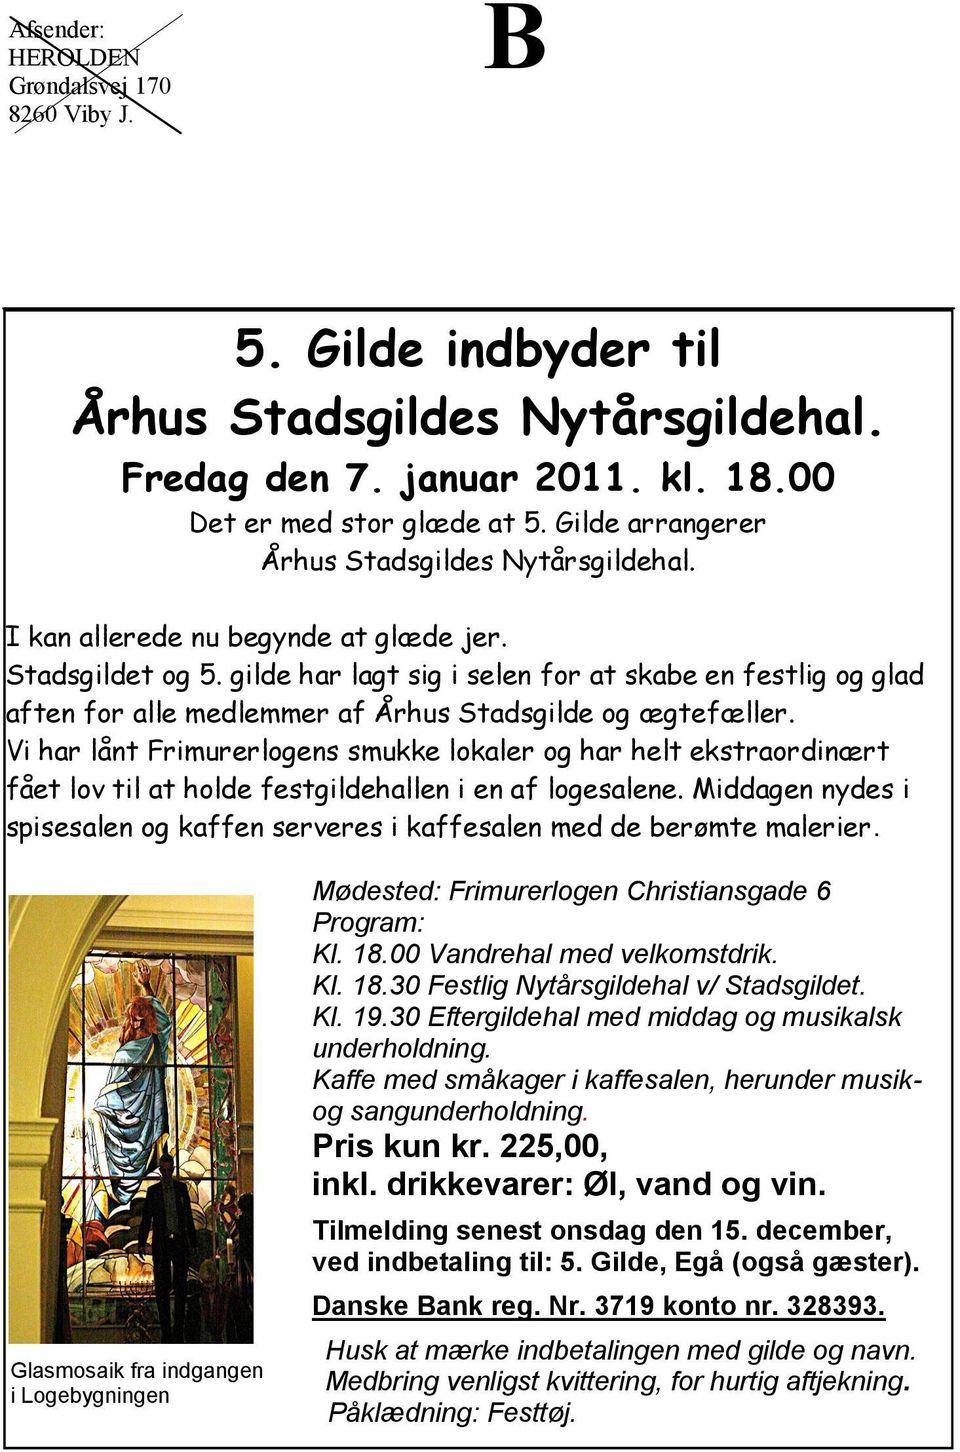 gilde har lagt sig i selen for at skabe en festlig og glad aften for alle medlemmer af Århus Stadsgilde og ægtefæller.